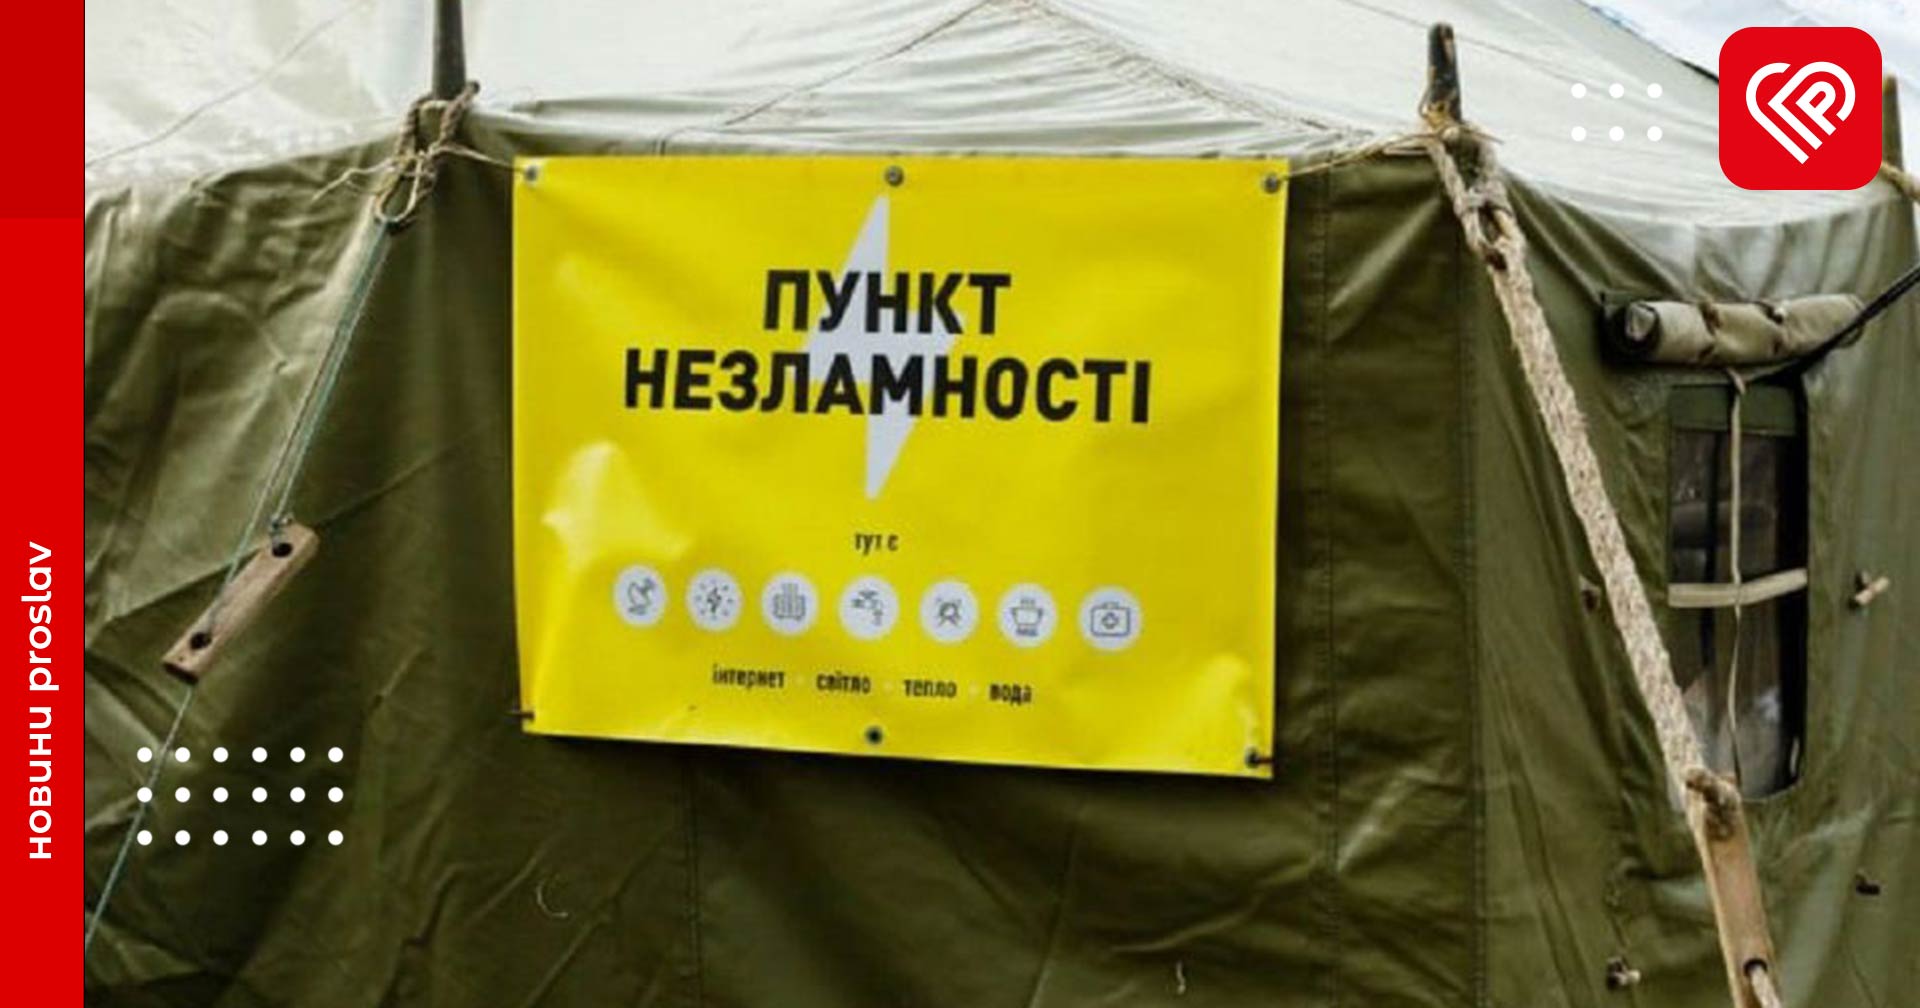 Адреси Пунктів Незламності у Переяславській громаді: рятувальники перевірили їхню готовність